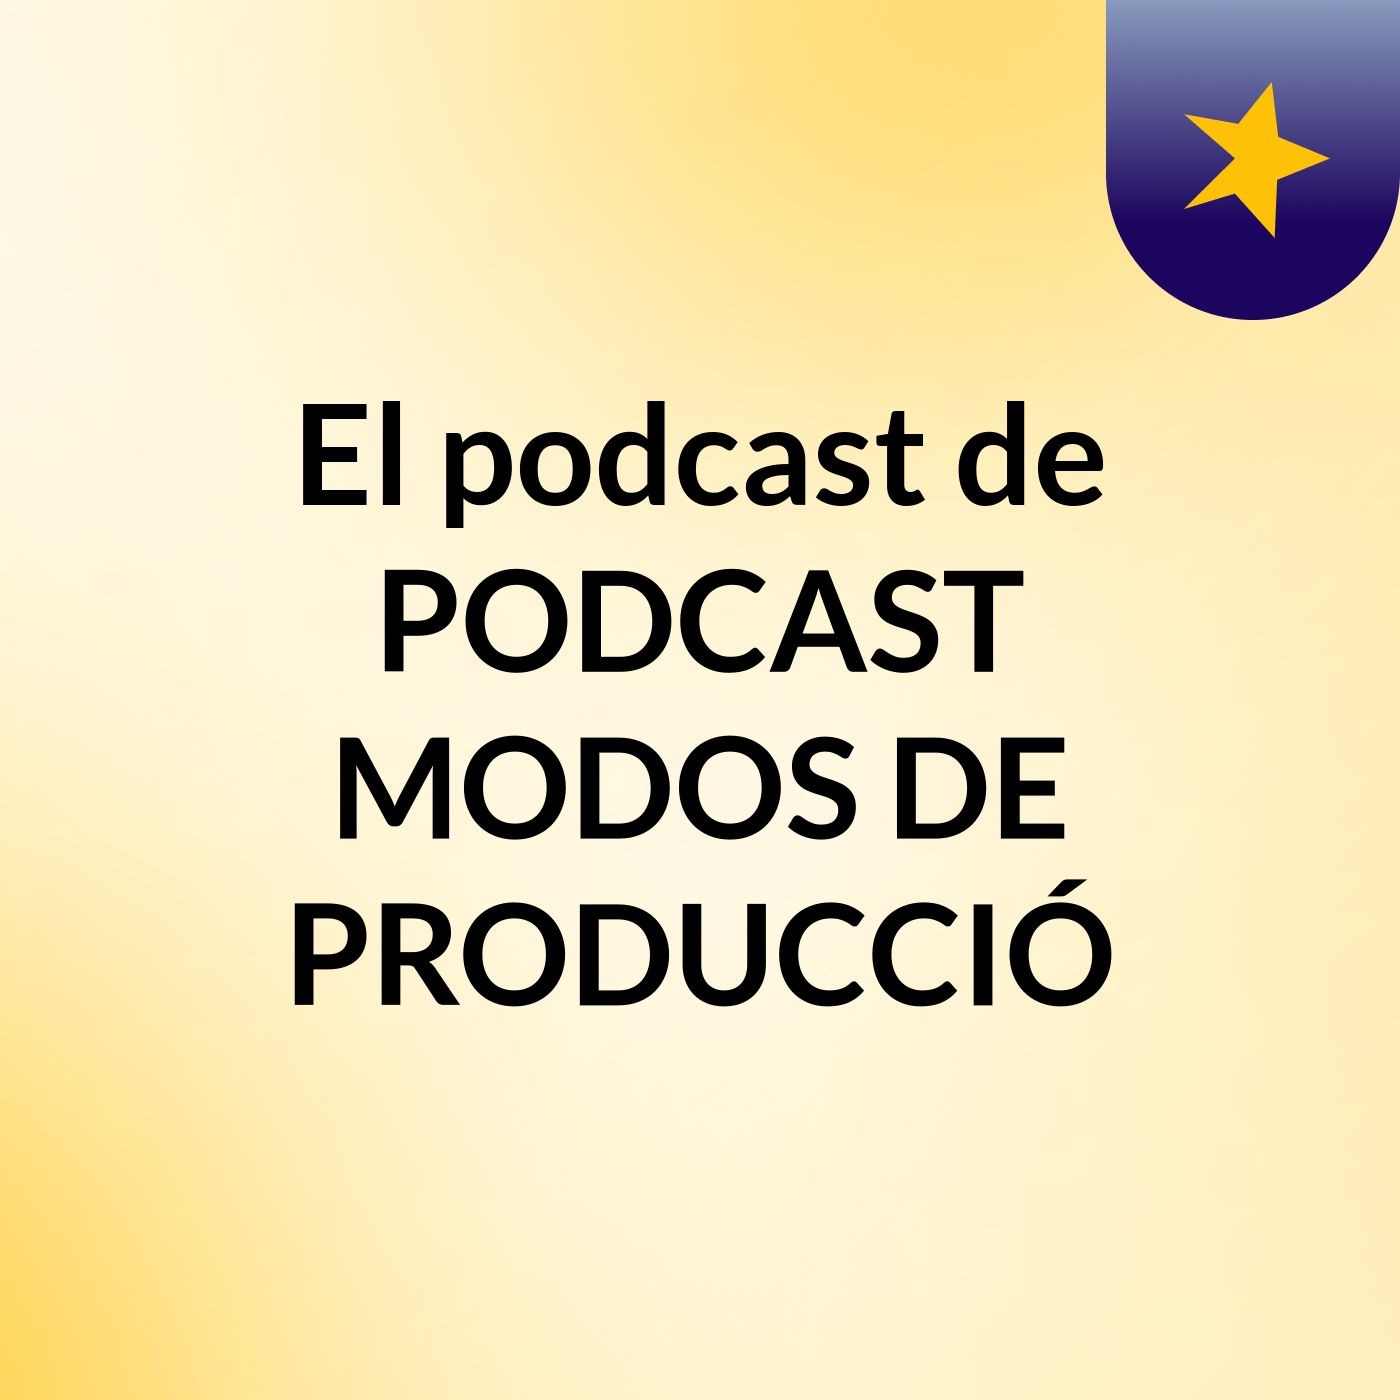 El podcast de PODCAST MODOS DE PRODUCCIÓ